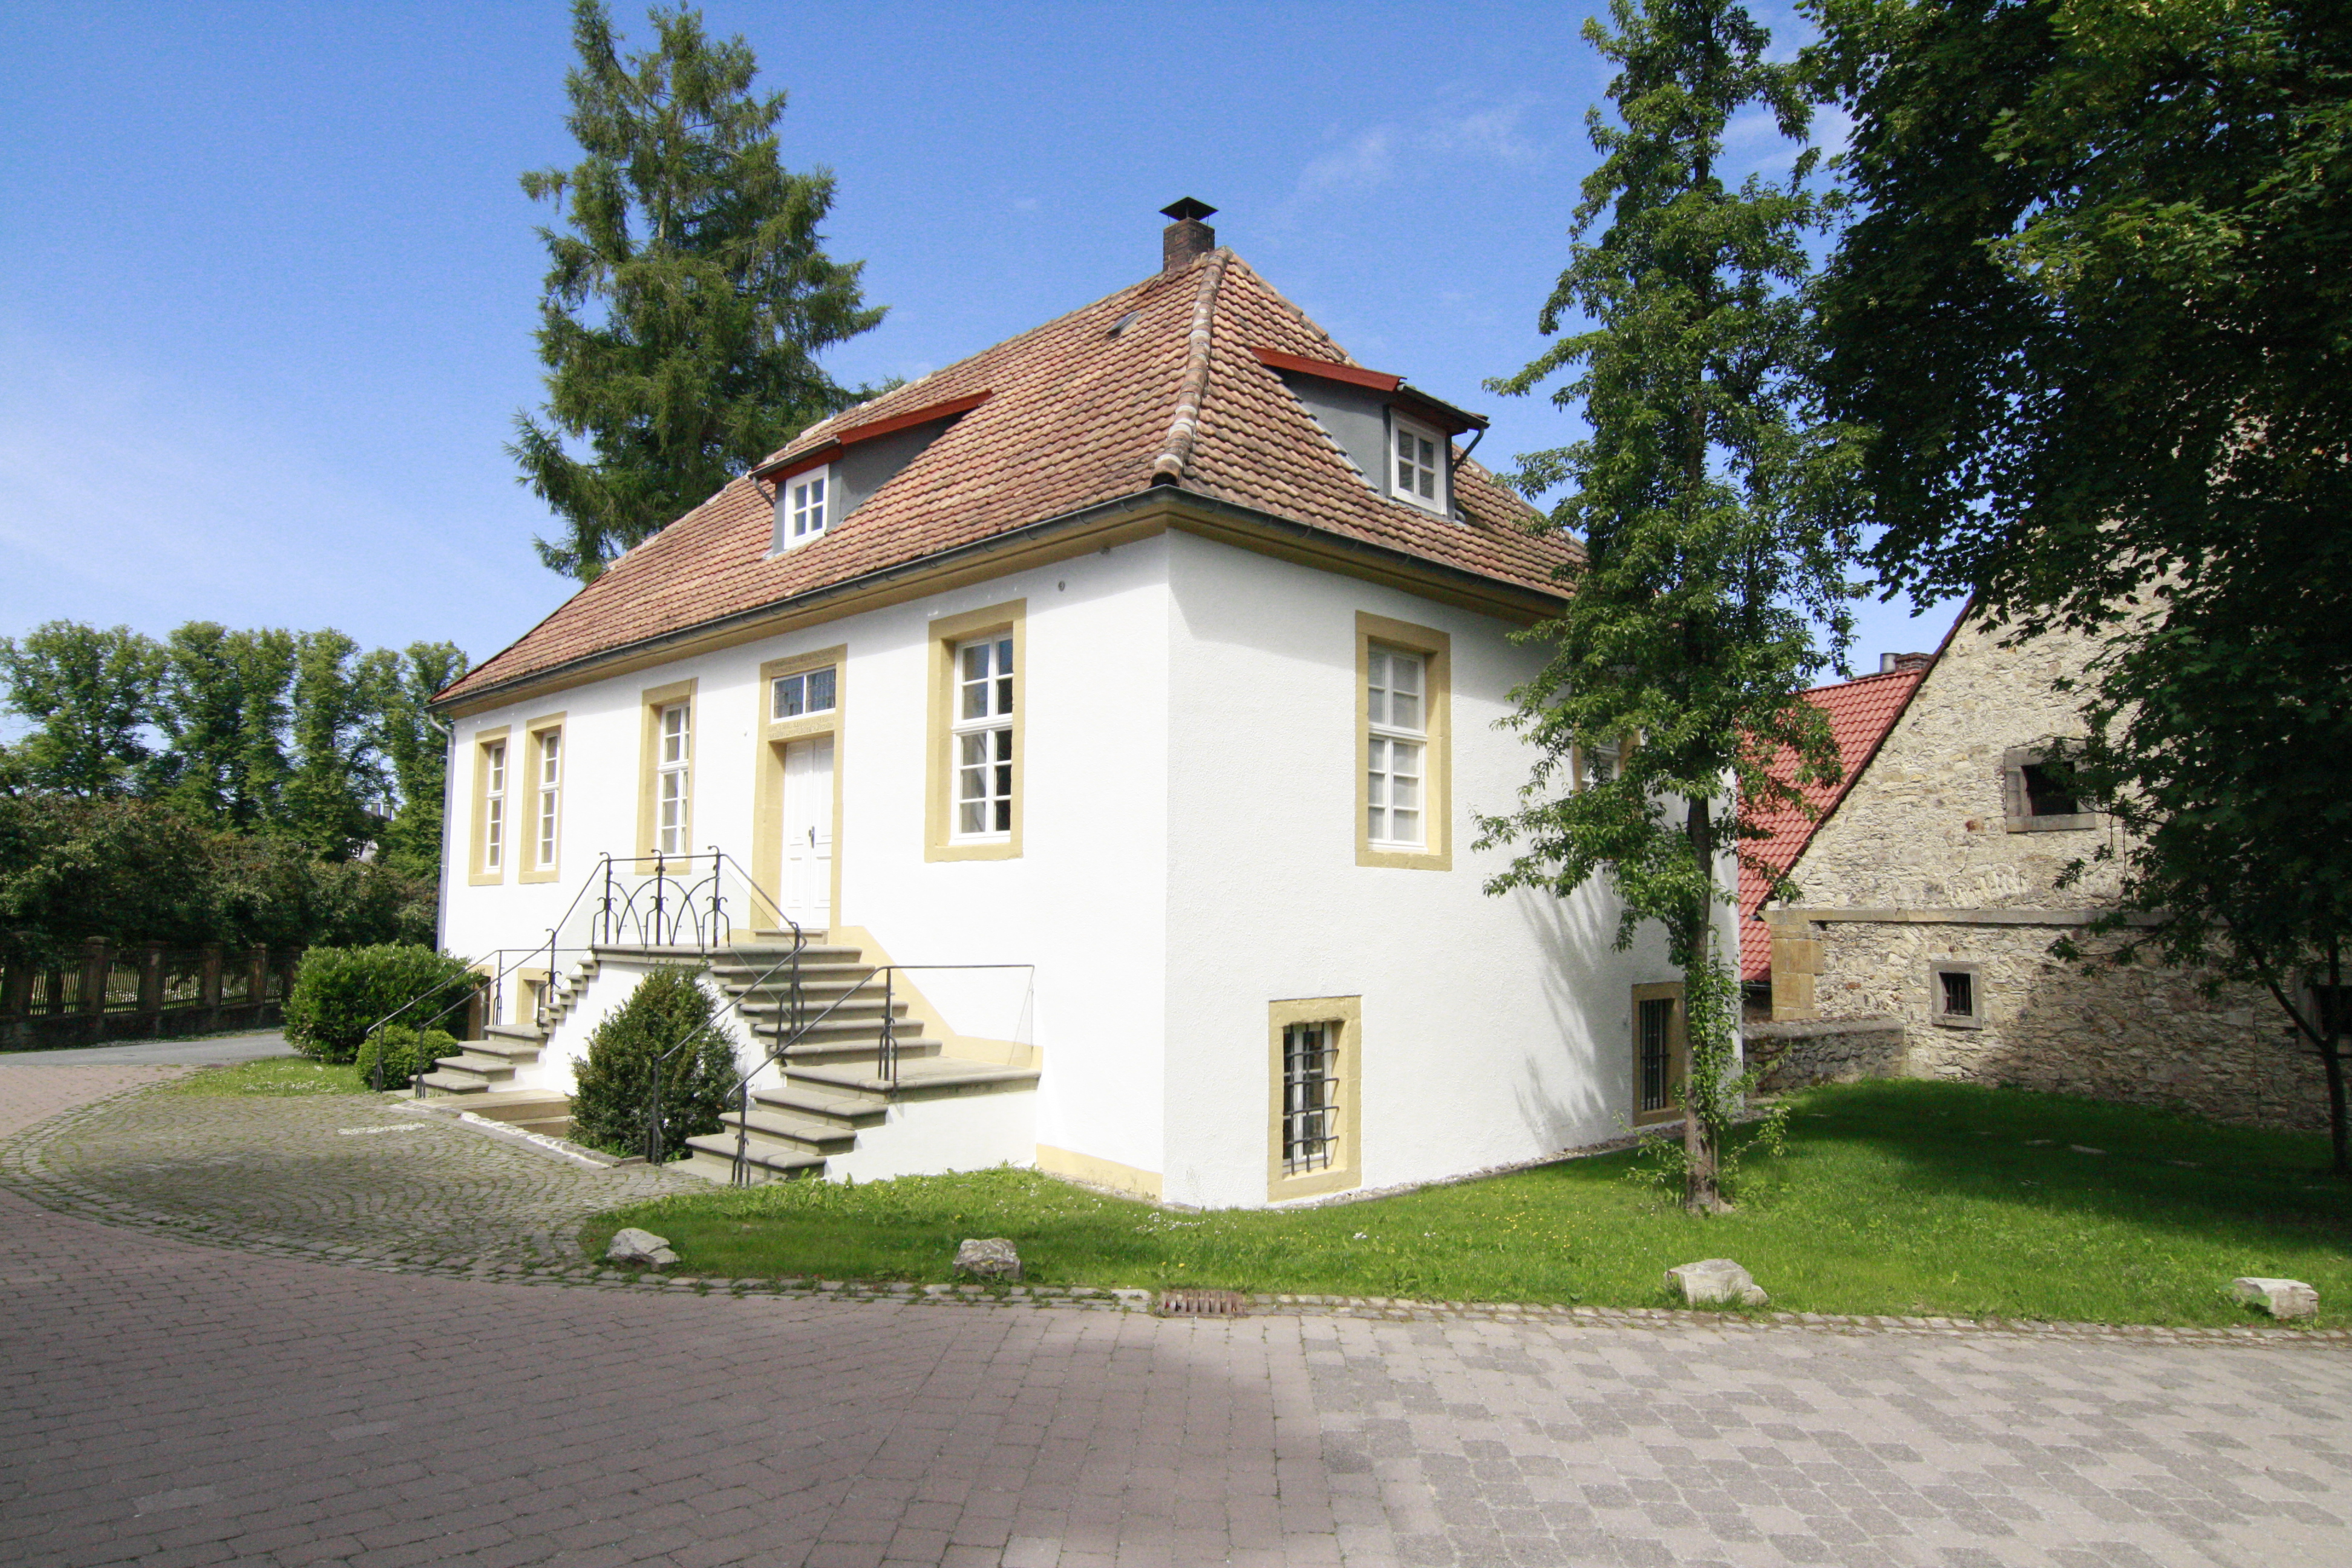 Altes Gericht Fürstenberg